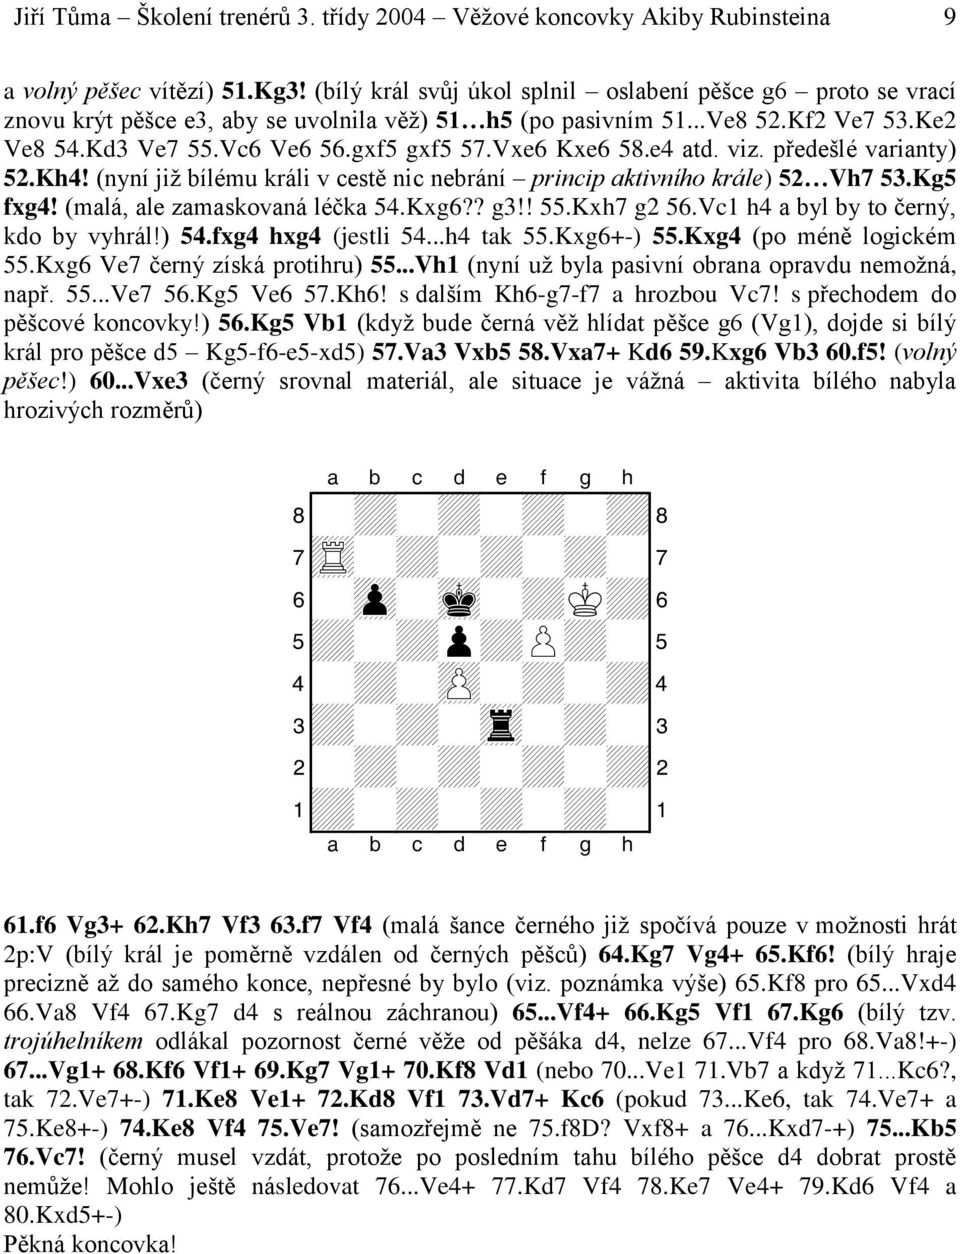 Vxe6 Kxe6 58.e4 atd. viz. předešlé varianty) 52.Kh4! (nyní již bílému králi v cestě nic nebrání princip aktivního krále) 52 Vh7 53.Kg5 fxg4! (malá, ale zamaskovaná léčka 54.Kxg6?? g3!! 55.Kxh7 g2 56.